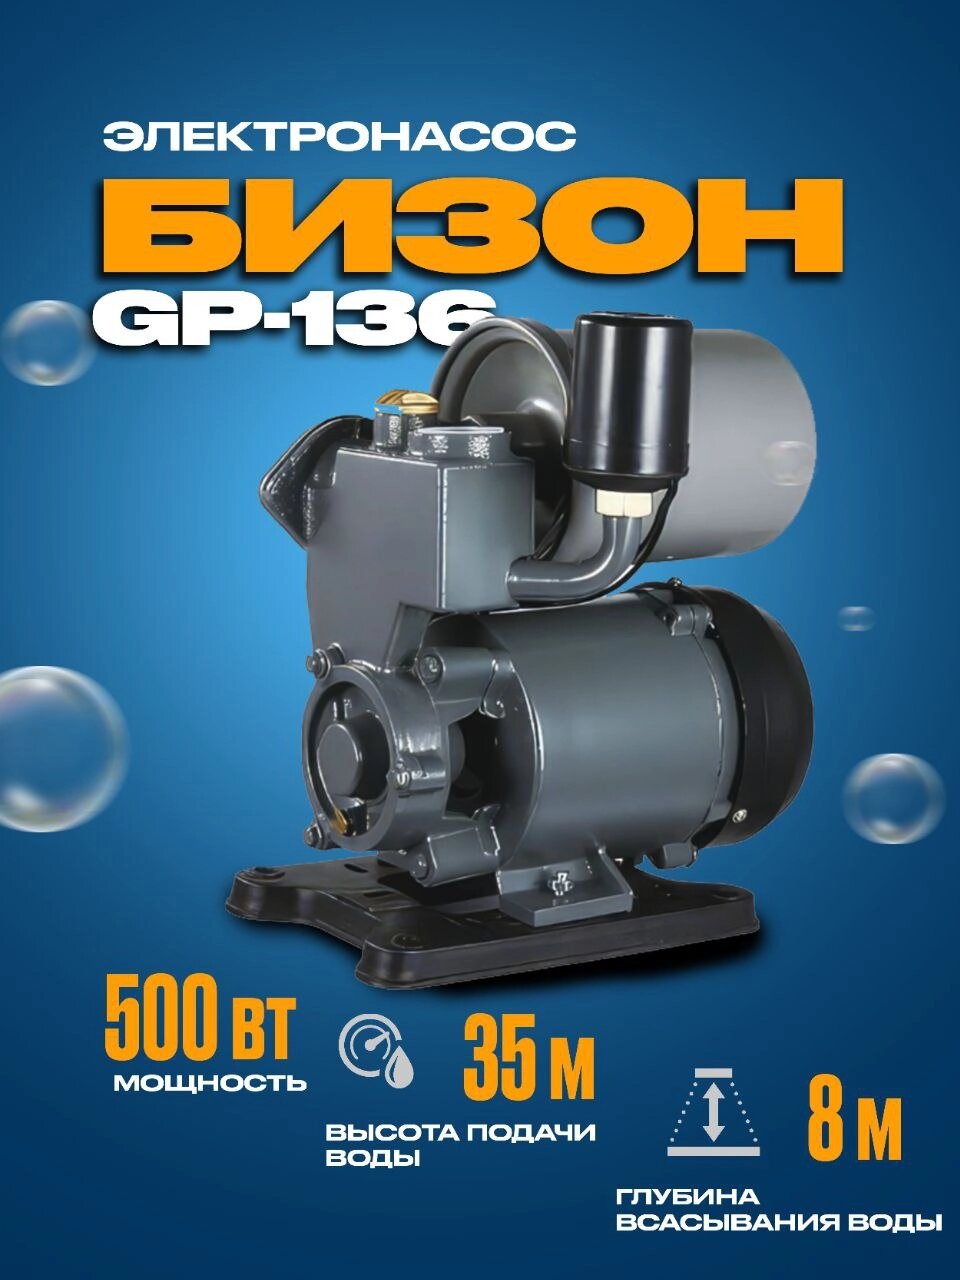 Автоматическая станция Водоснабжения GP-136 мощность 500Ват (2л накопитель) - характеристики